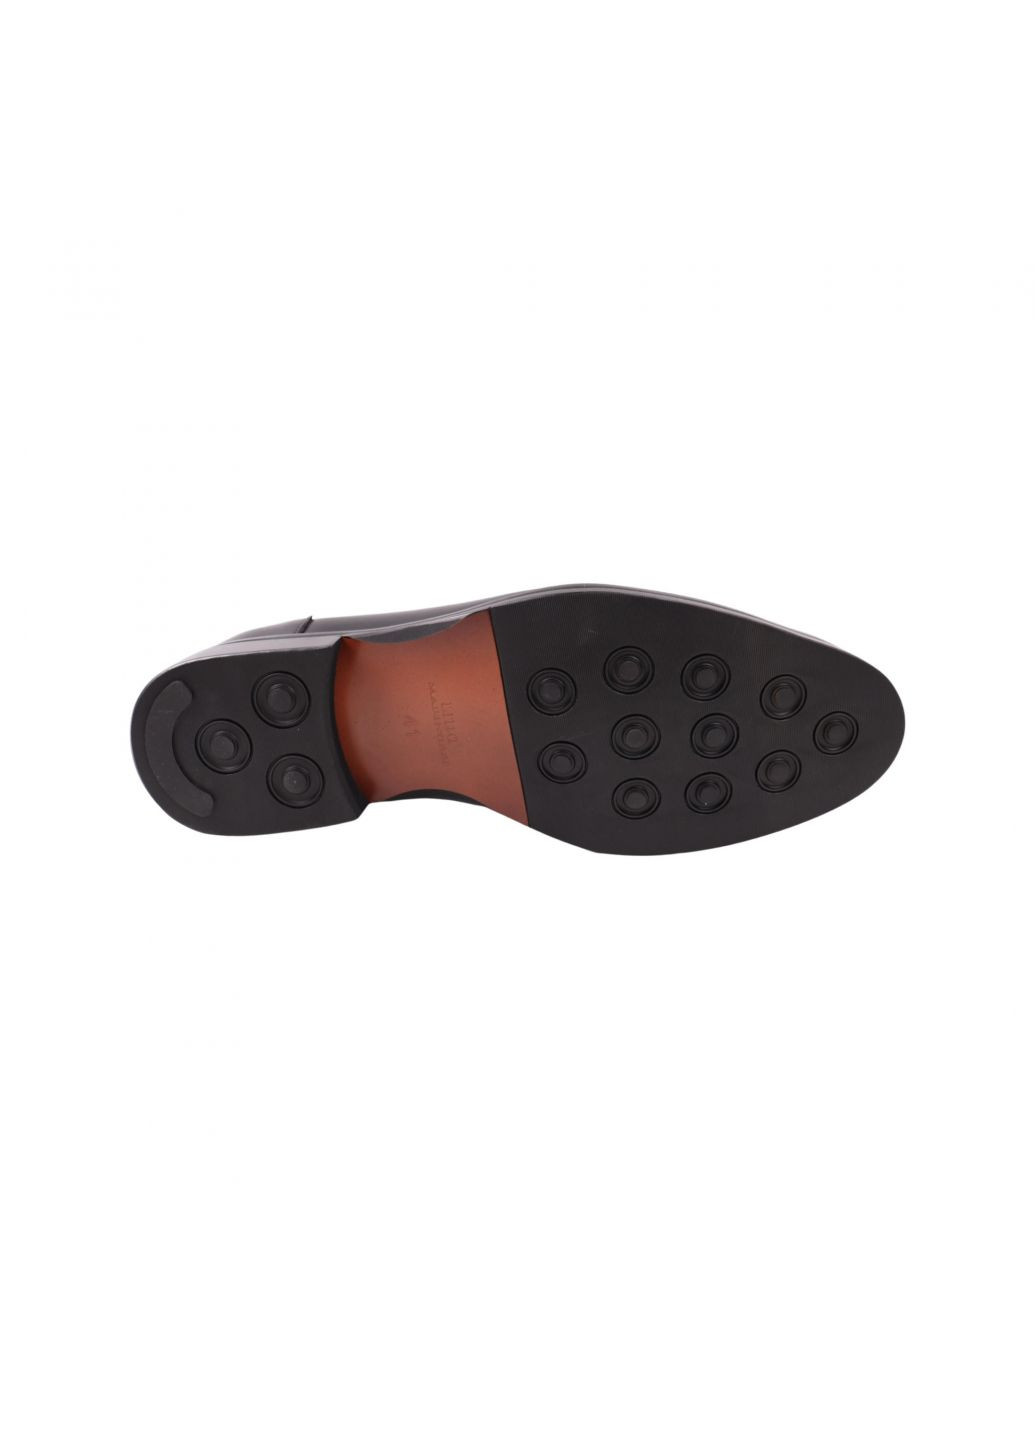 Туфлі чоловічі Lido Marinozi чорні натуральна шкіра Lido Marinozzi 310-23dt (262896860)